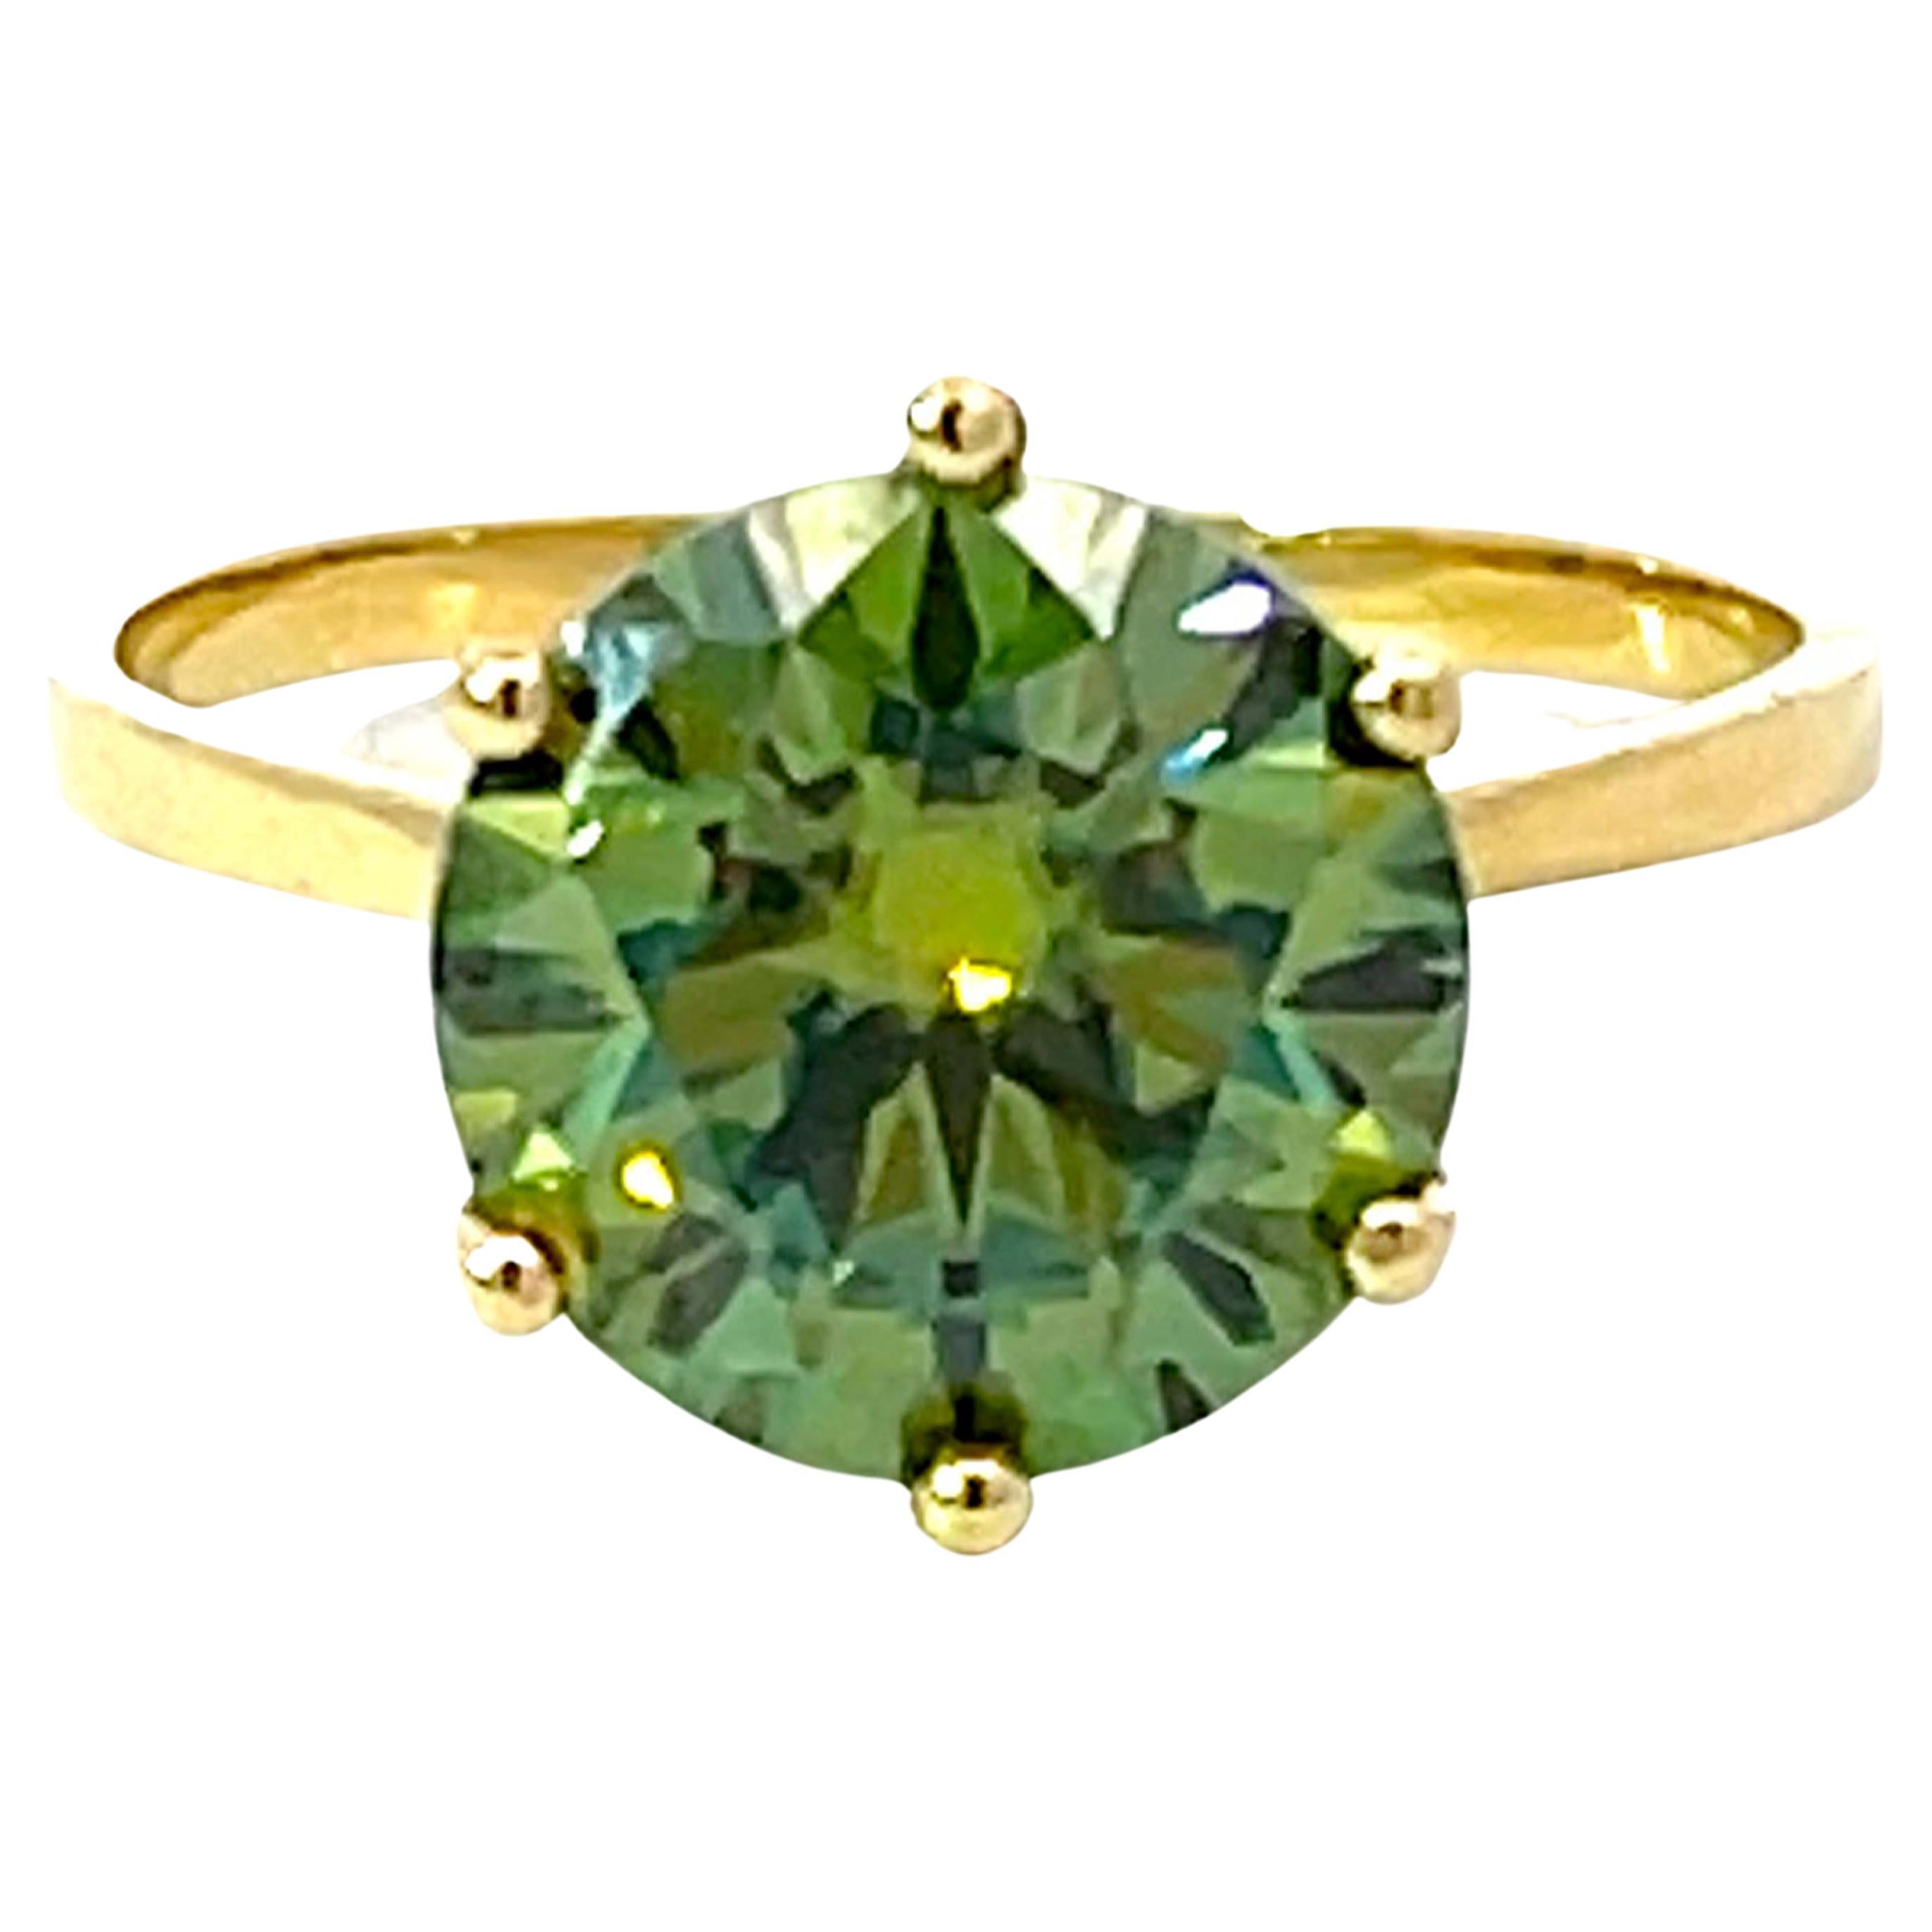 4 Carat Green Moissanite Ring in 14K Yellow Gold